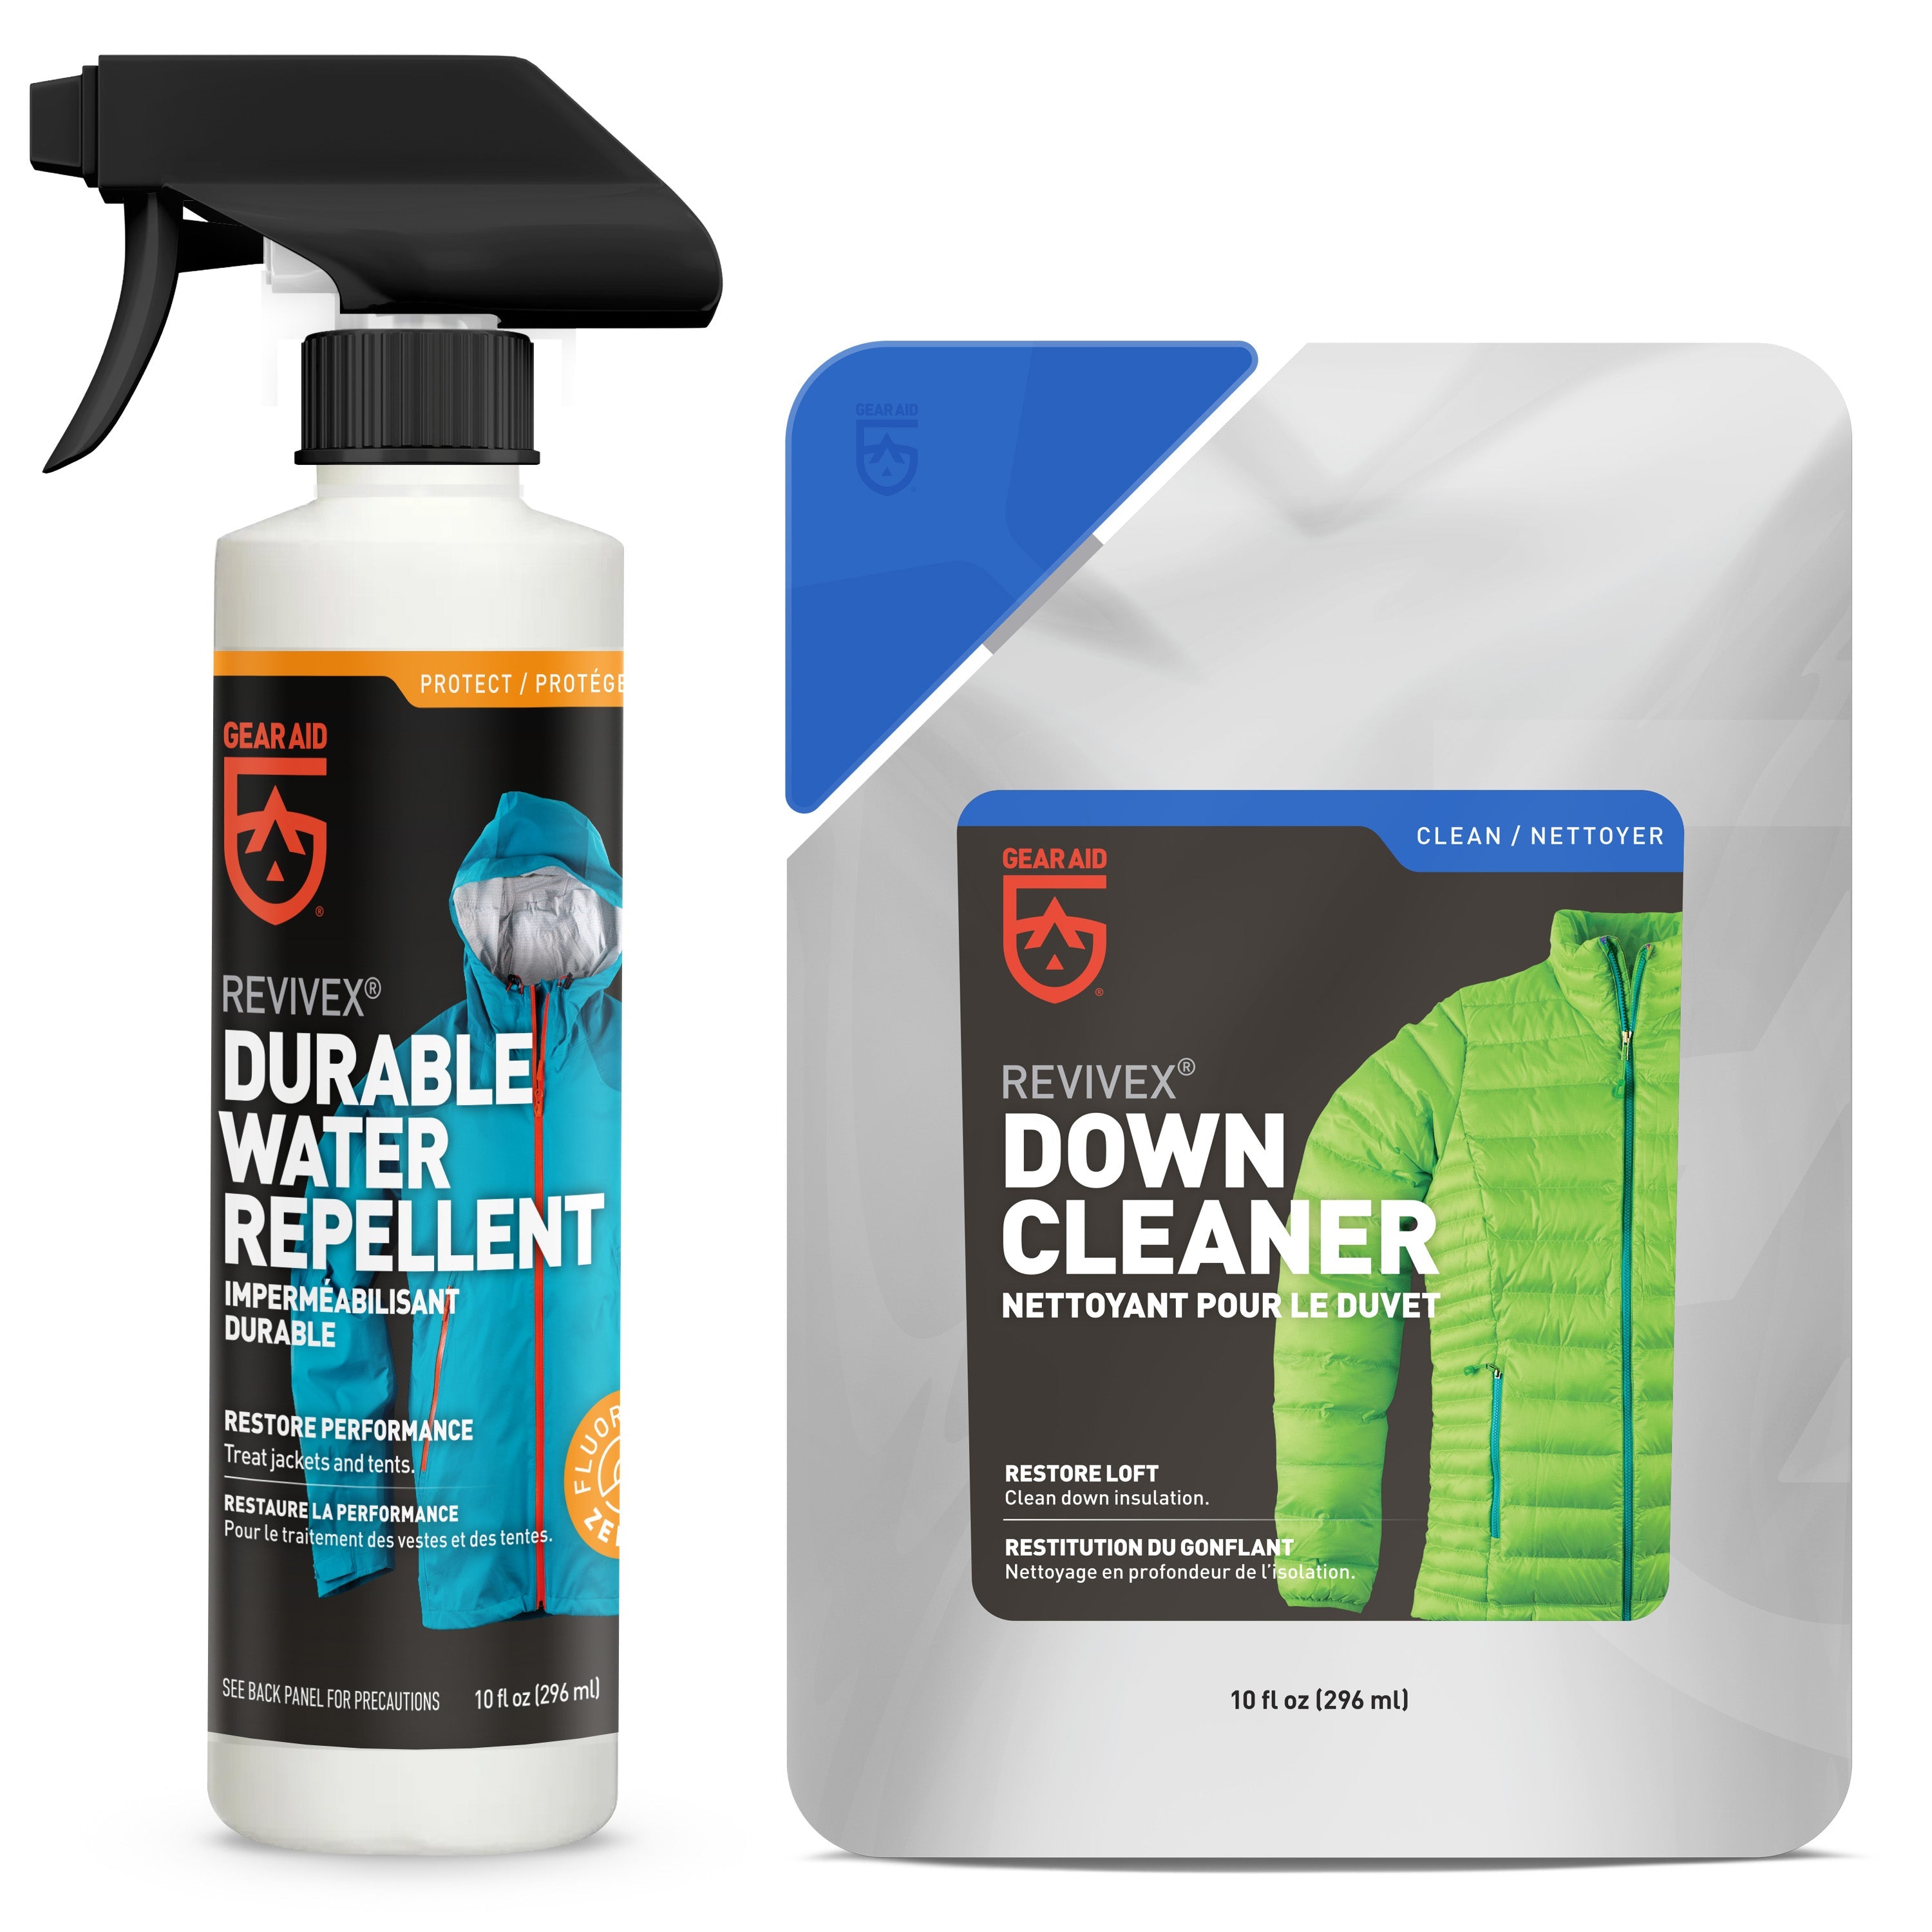 ReviveX® Wash In Water Repellent